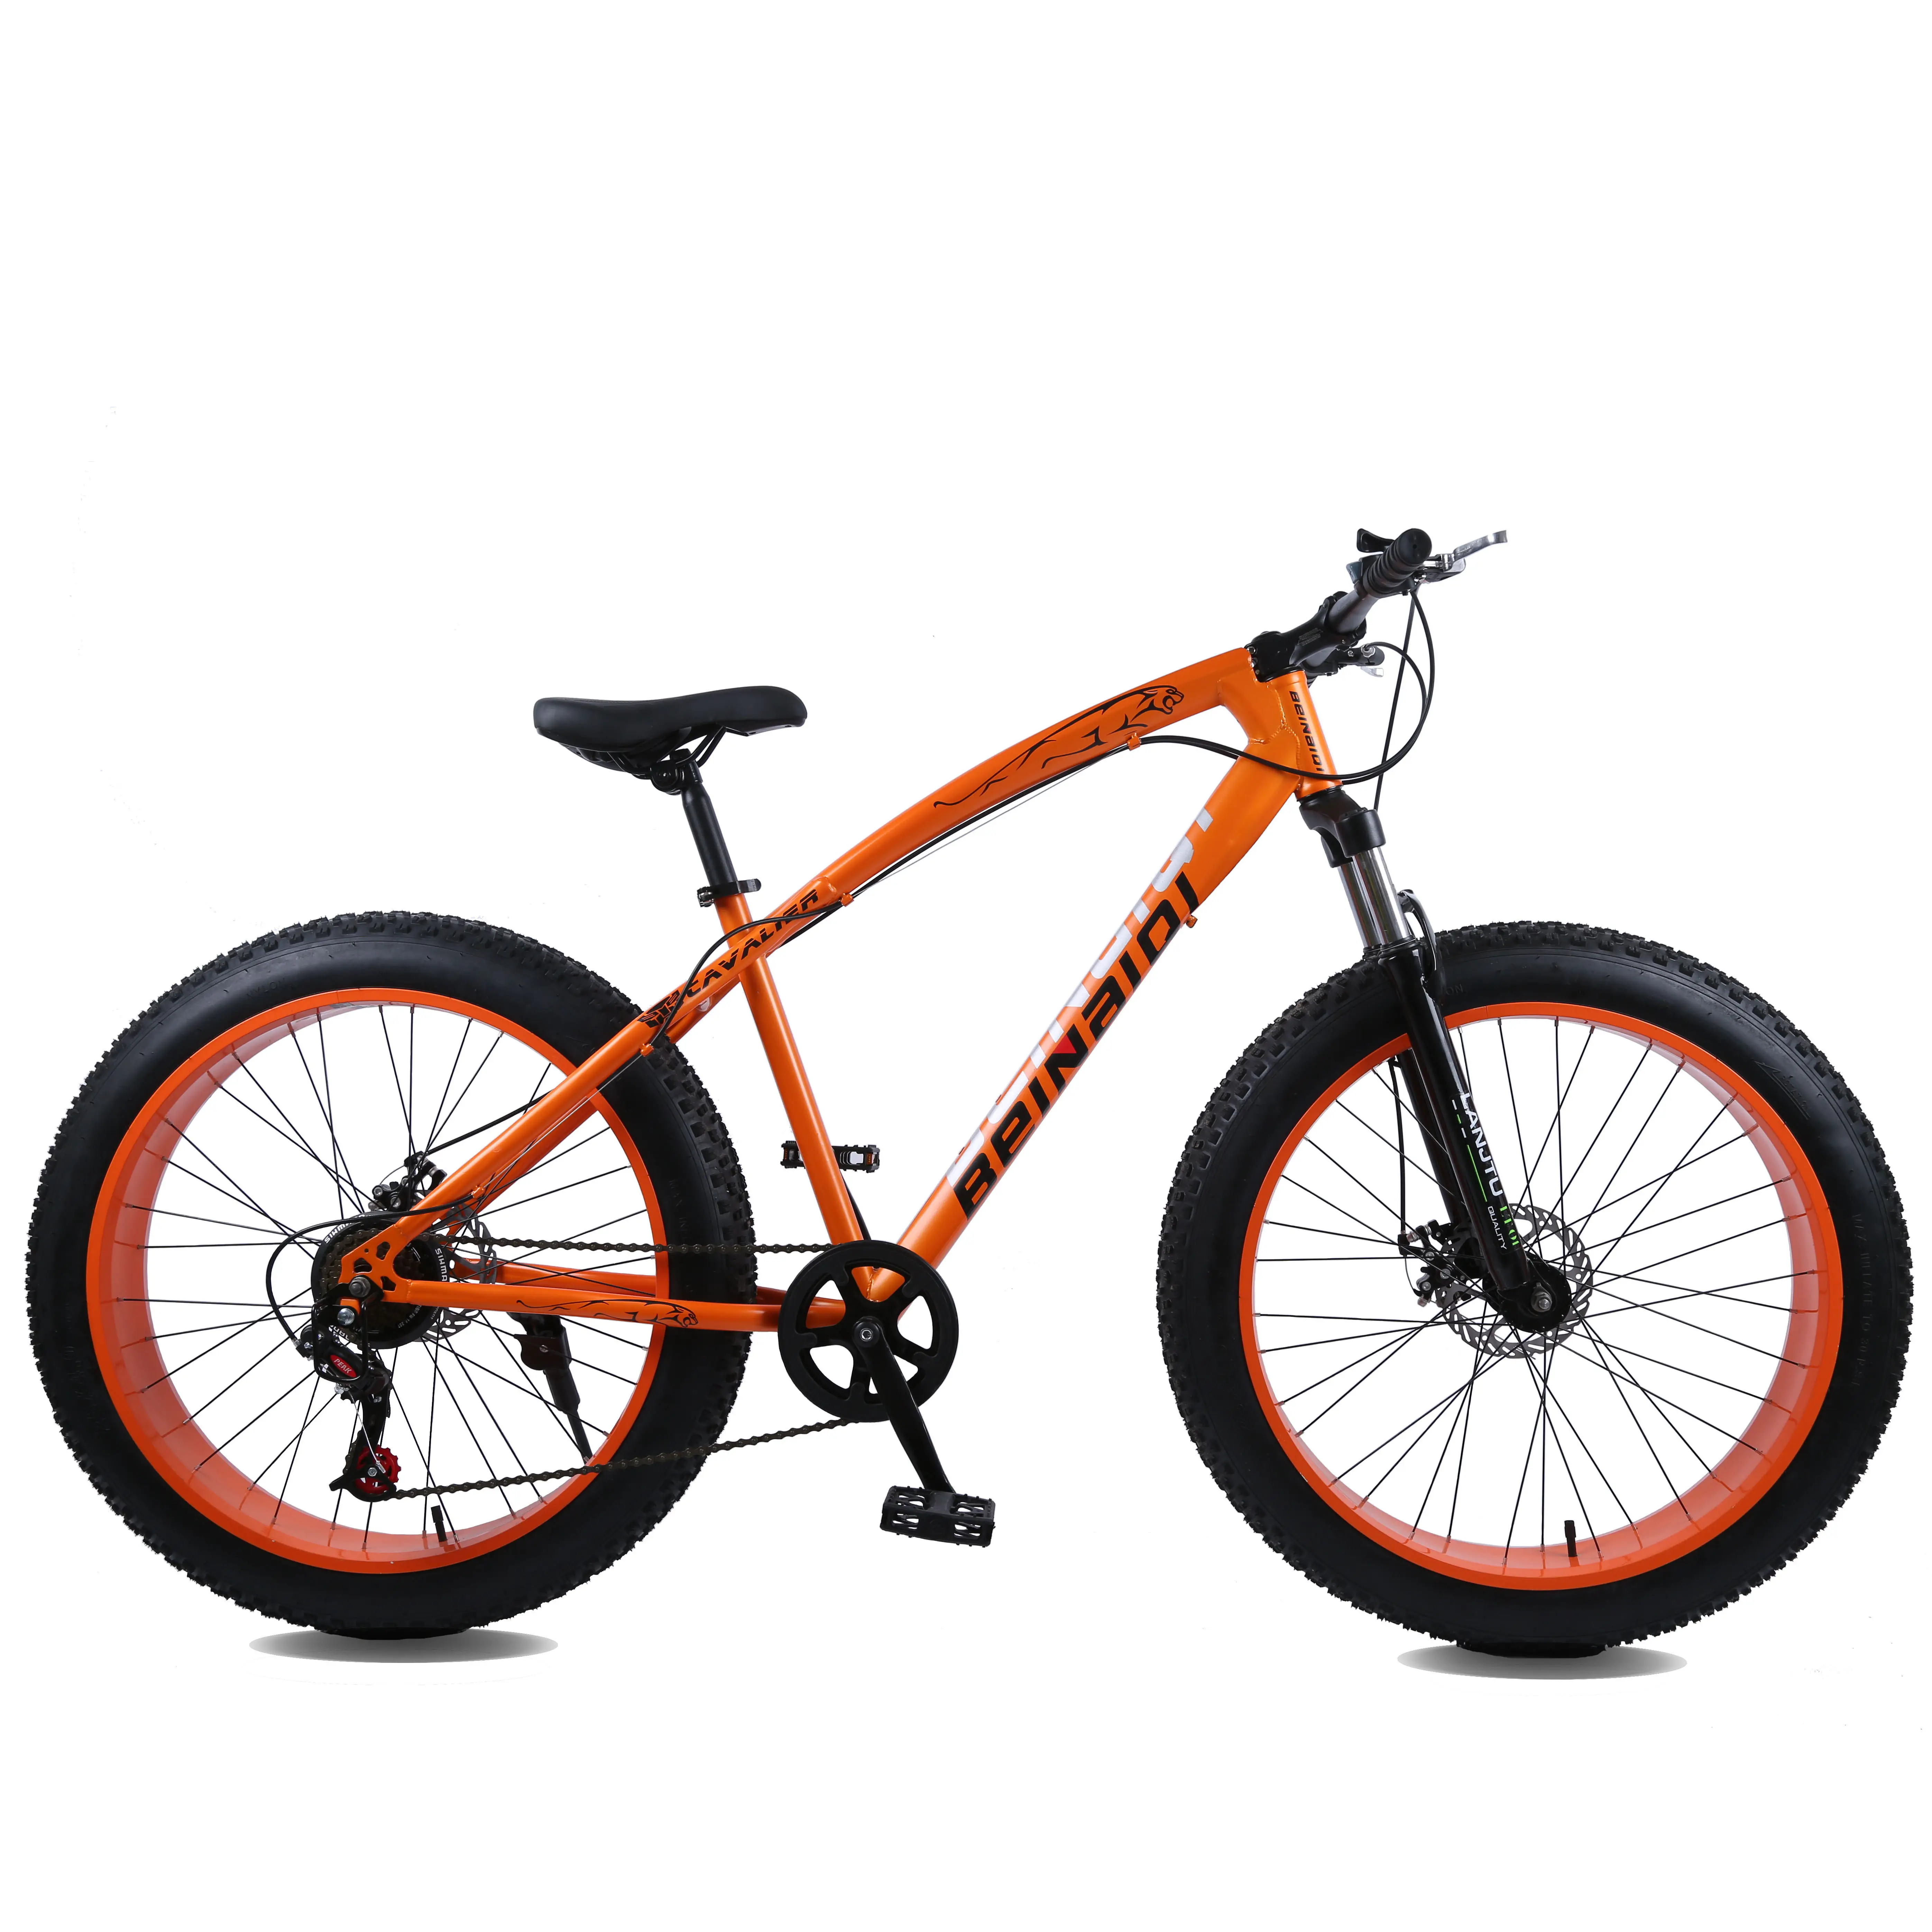 دراجة ثلجية للبيع بالجملة بمقاسات 20 و26 بوصة دراجة ثلجية بسرعة 7 و21 و24 مع إطارات سميكة 4.0